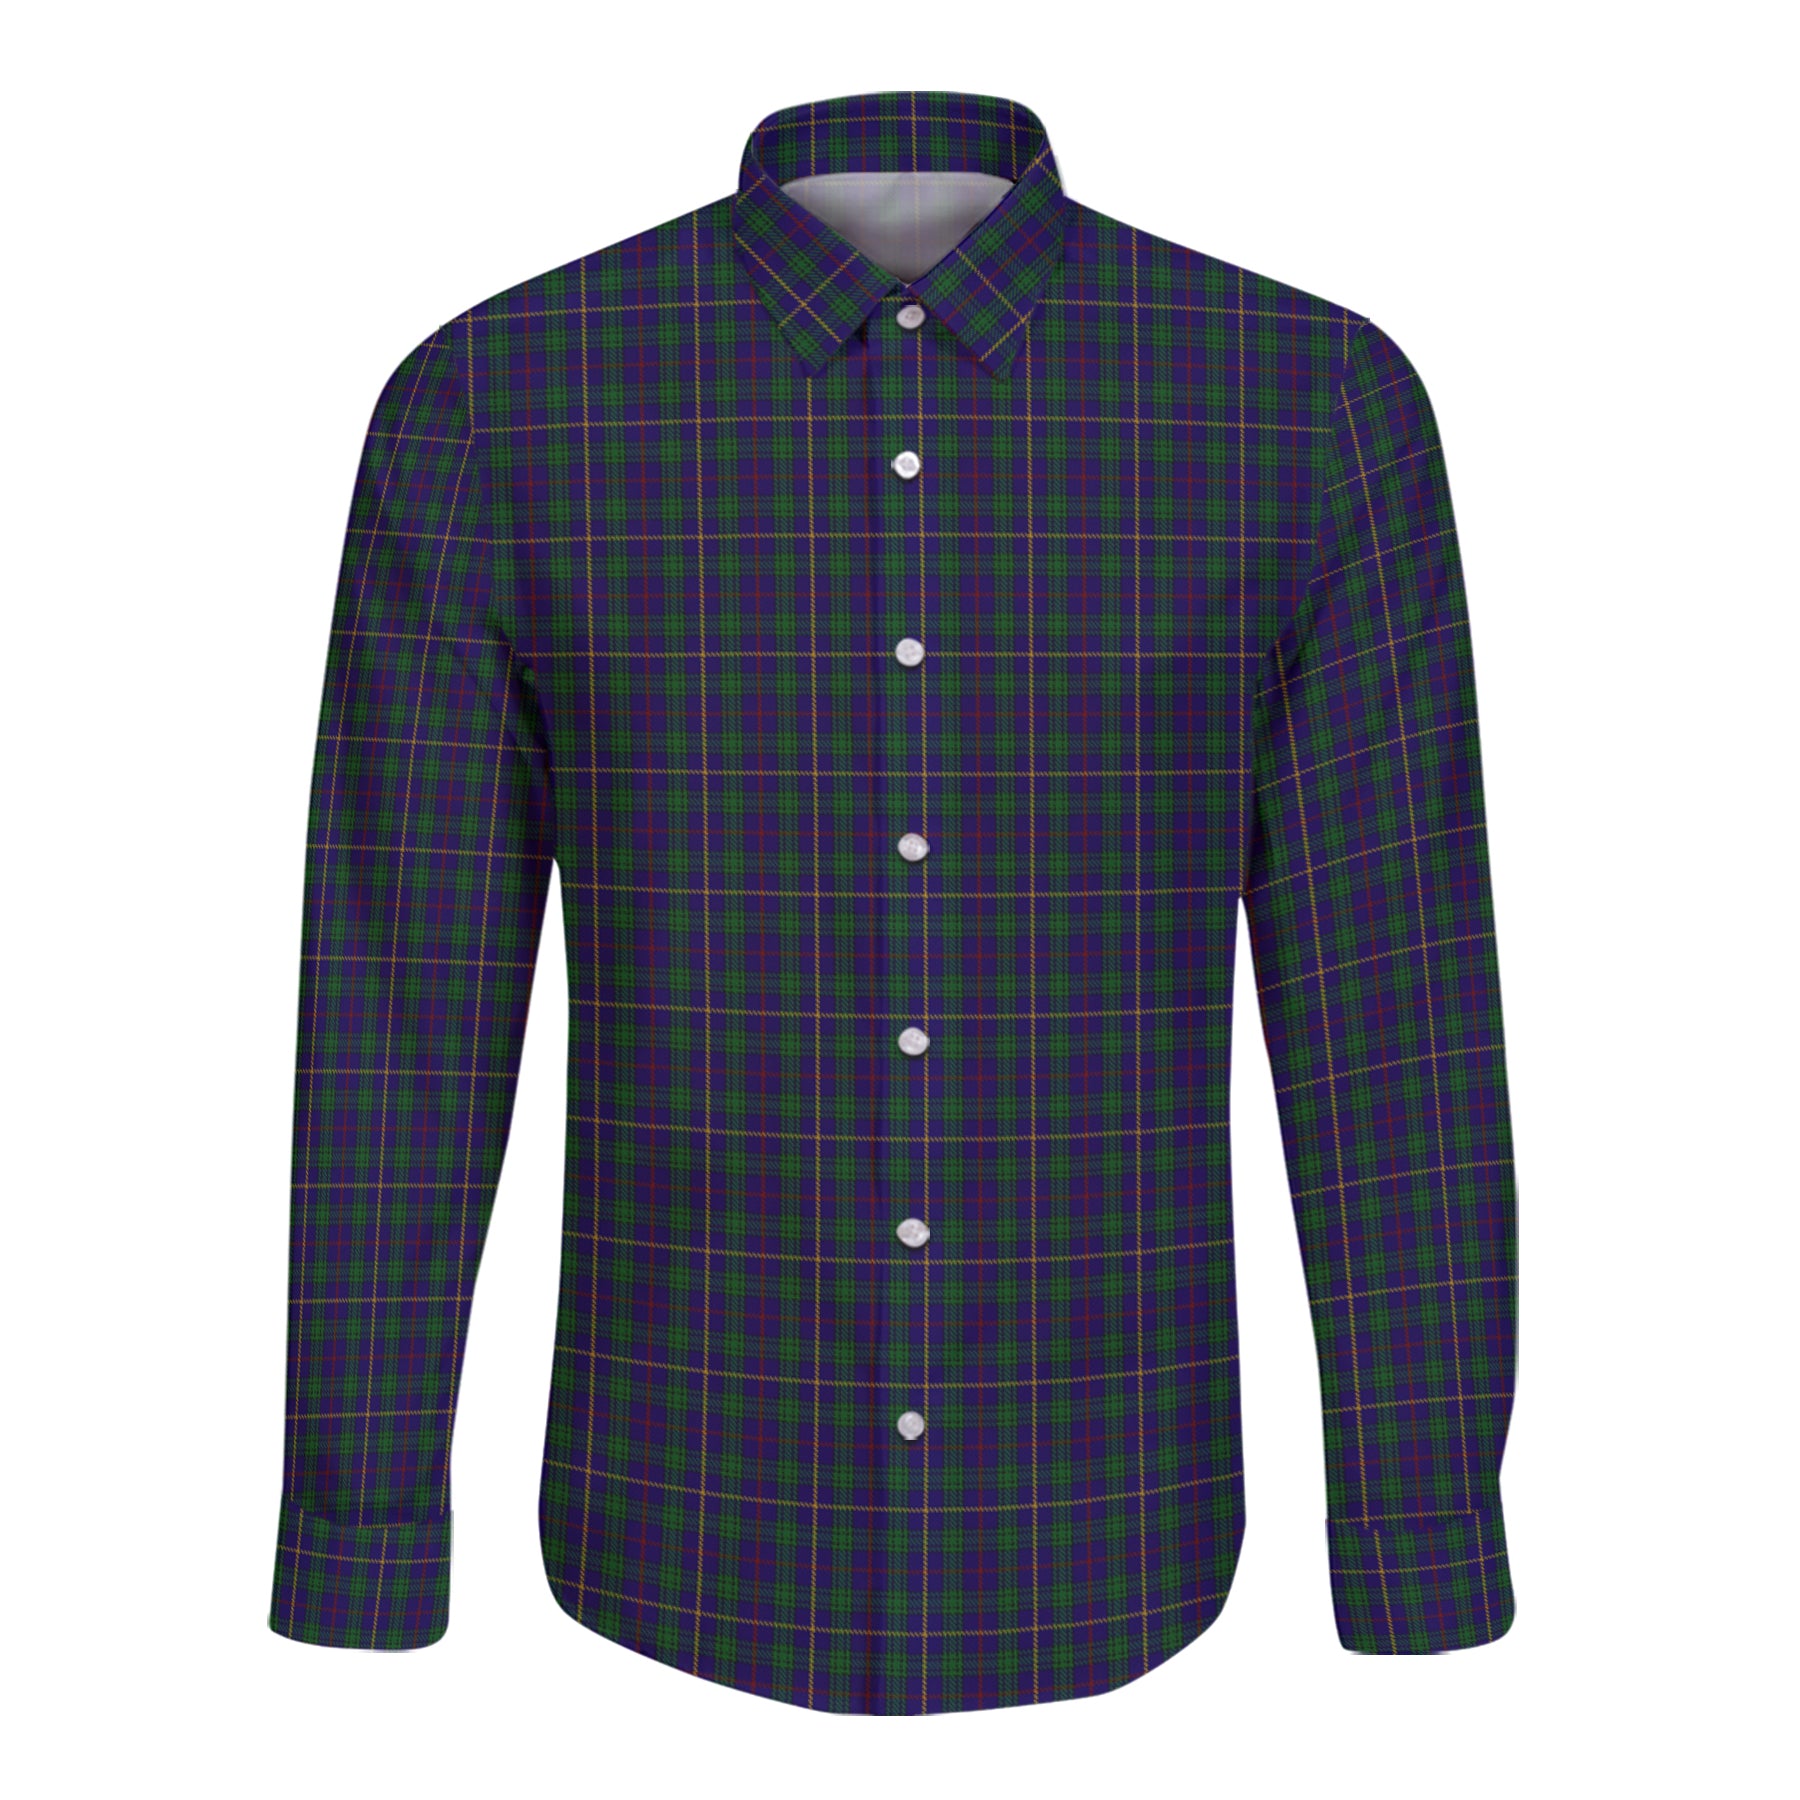 Maccainsh Tartan Long Sleeve Button Up Shirt K23